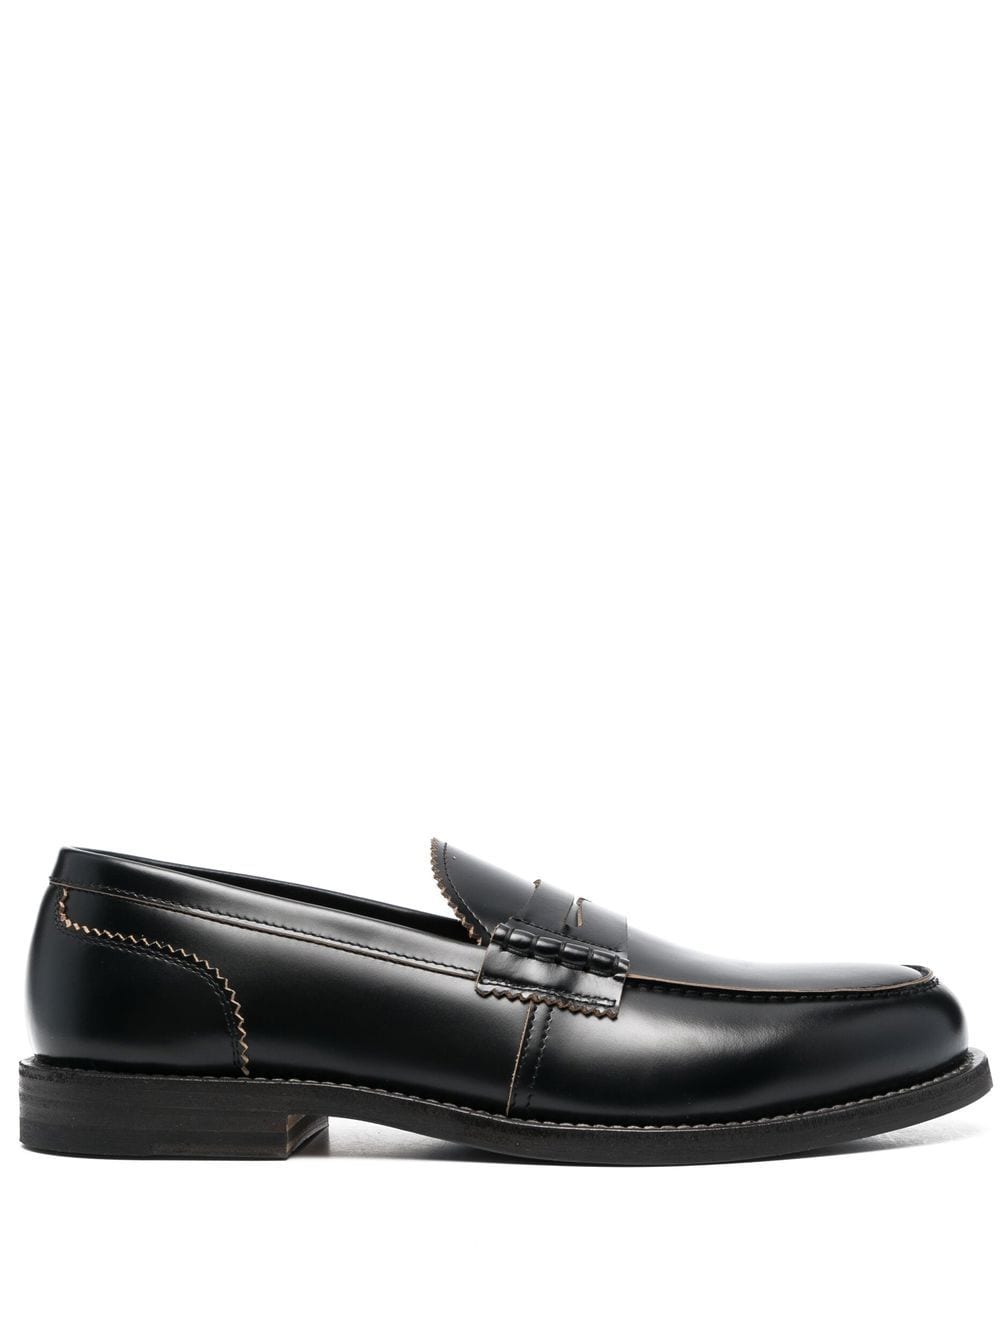 Henderson Baracco almond toe calf-leather loafers - Black von Henderson Baracco